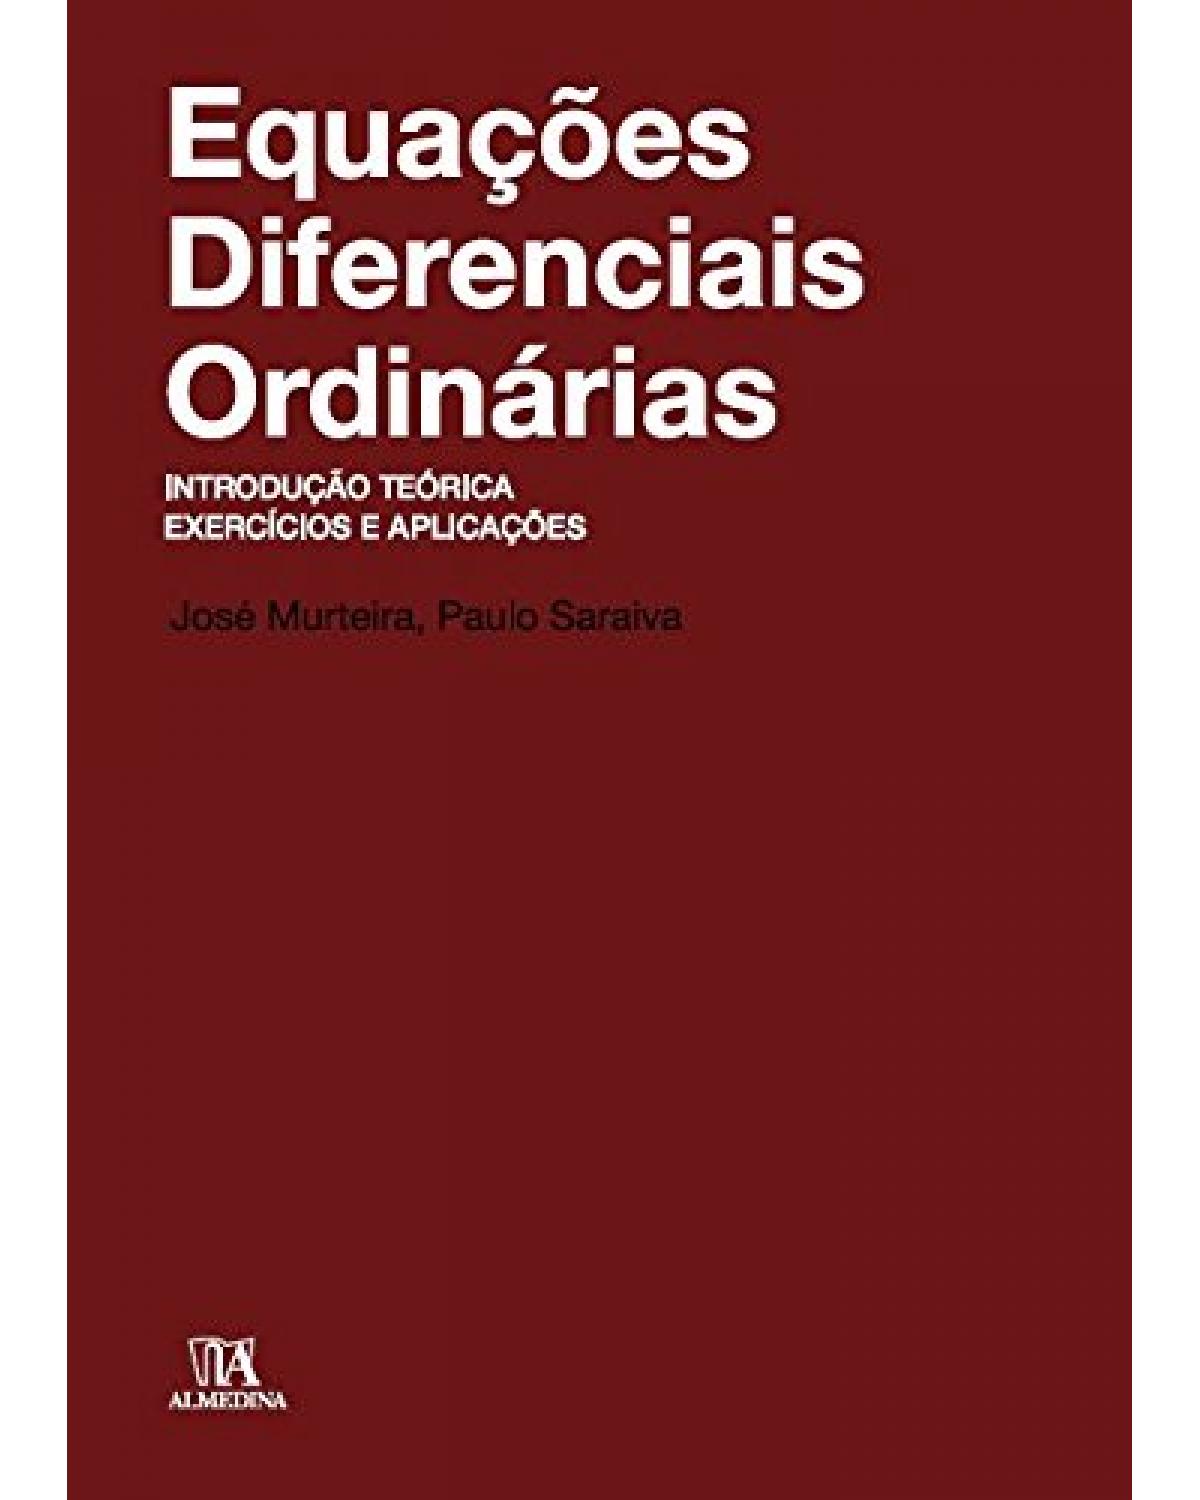 Equações diferenciais ordinárias - introdução teórica, exercícios e aplicações - 1ª Edição | 2010